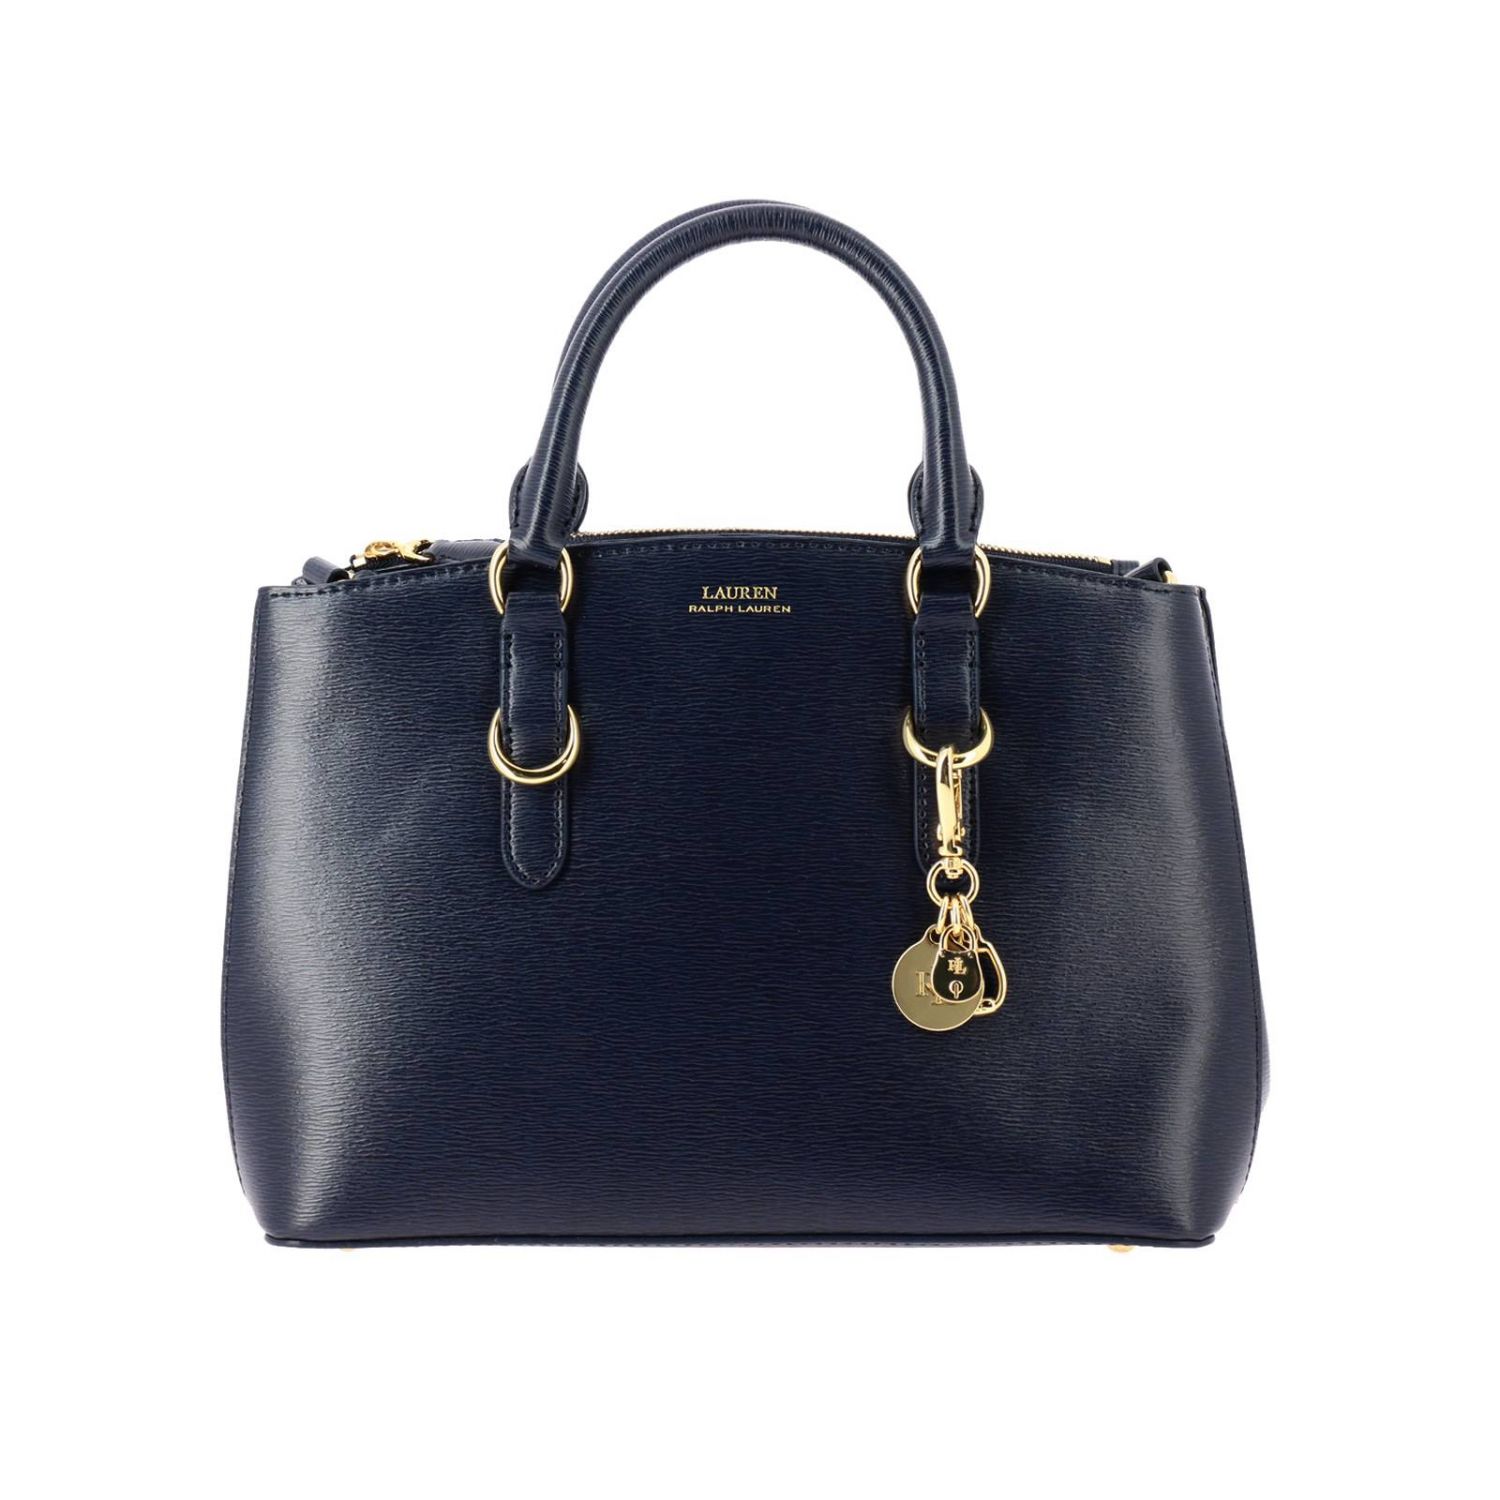 Lauren Ralph Lauren Outlet: handbag for woman - Navy | Lauren Ralph ...